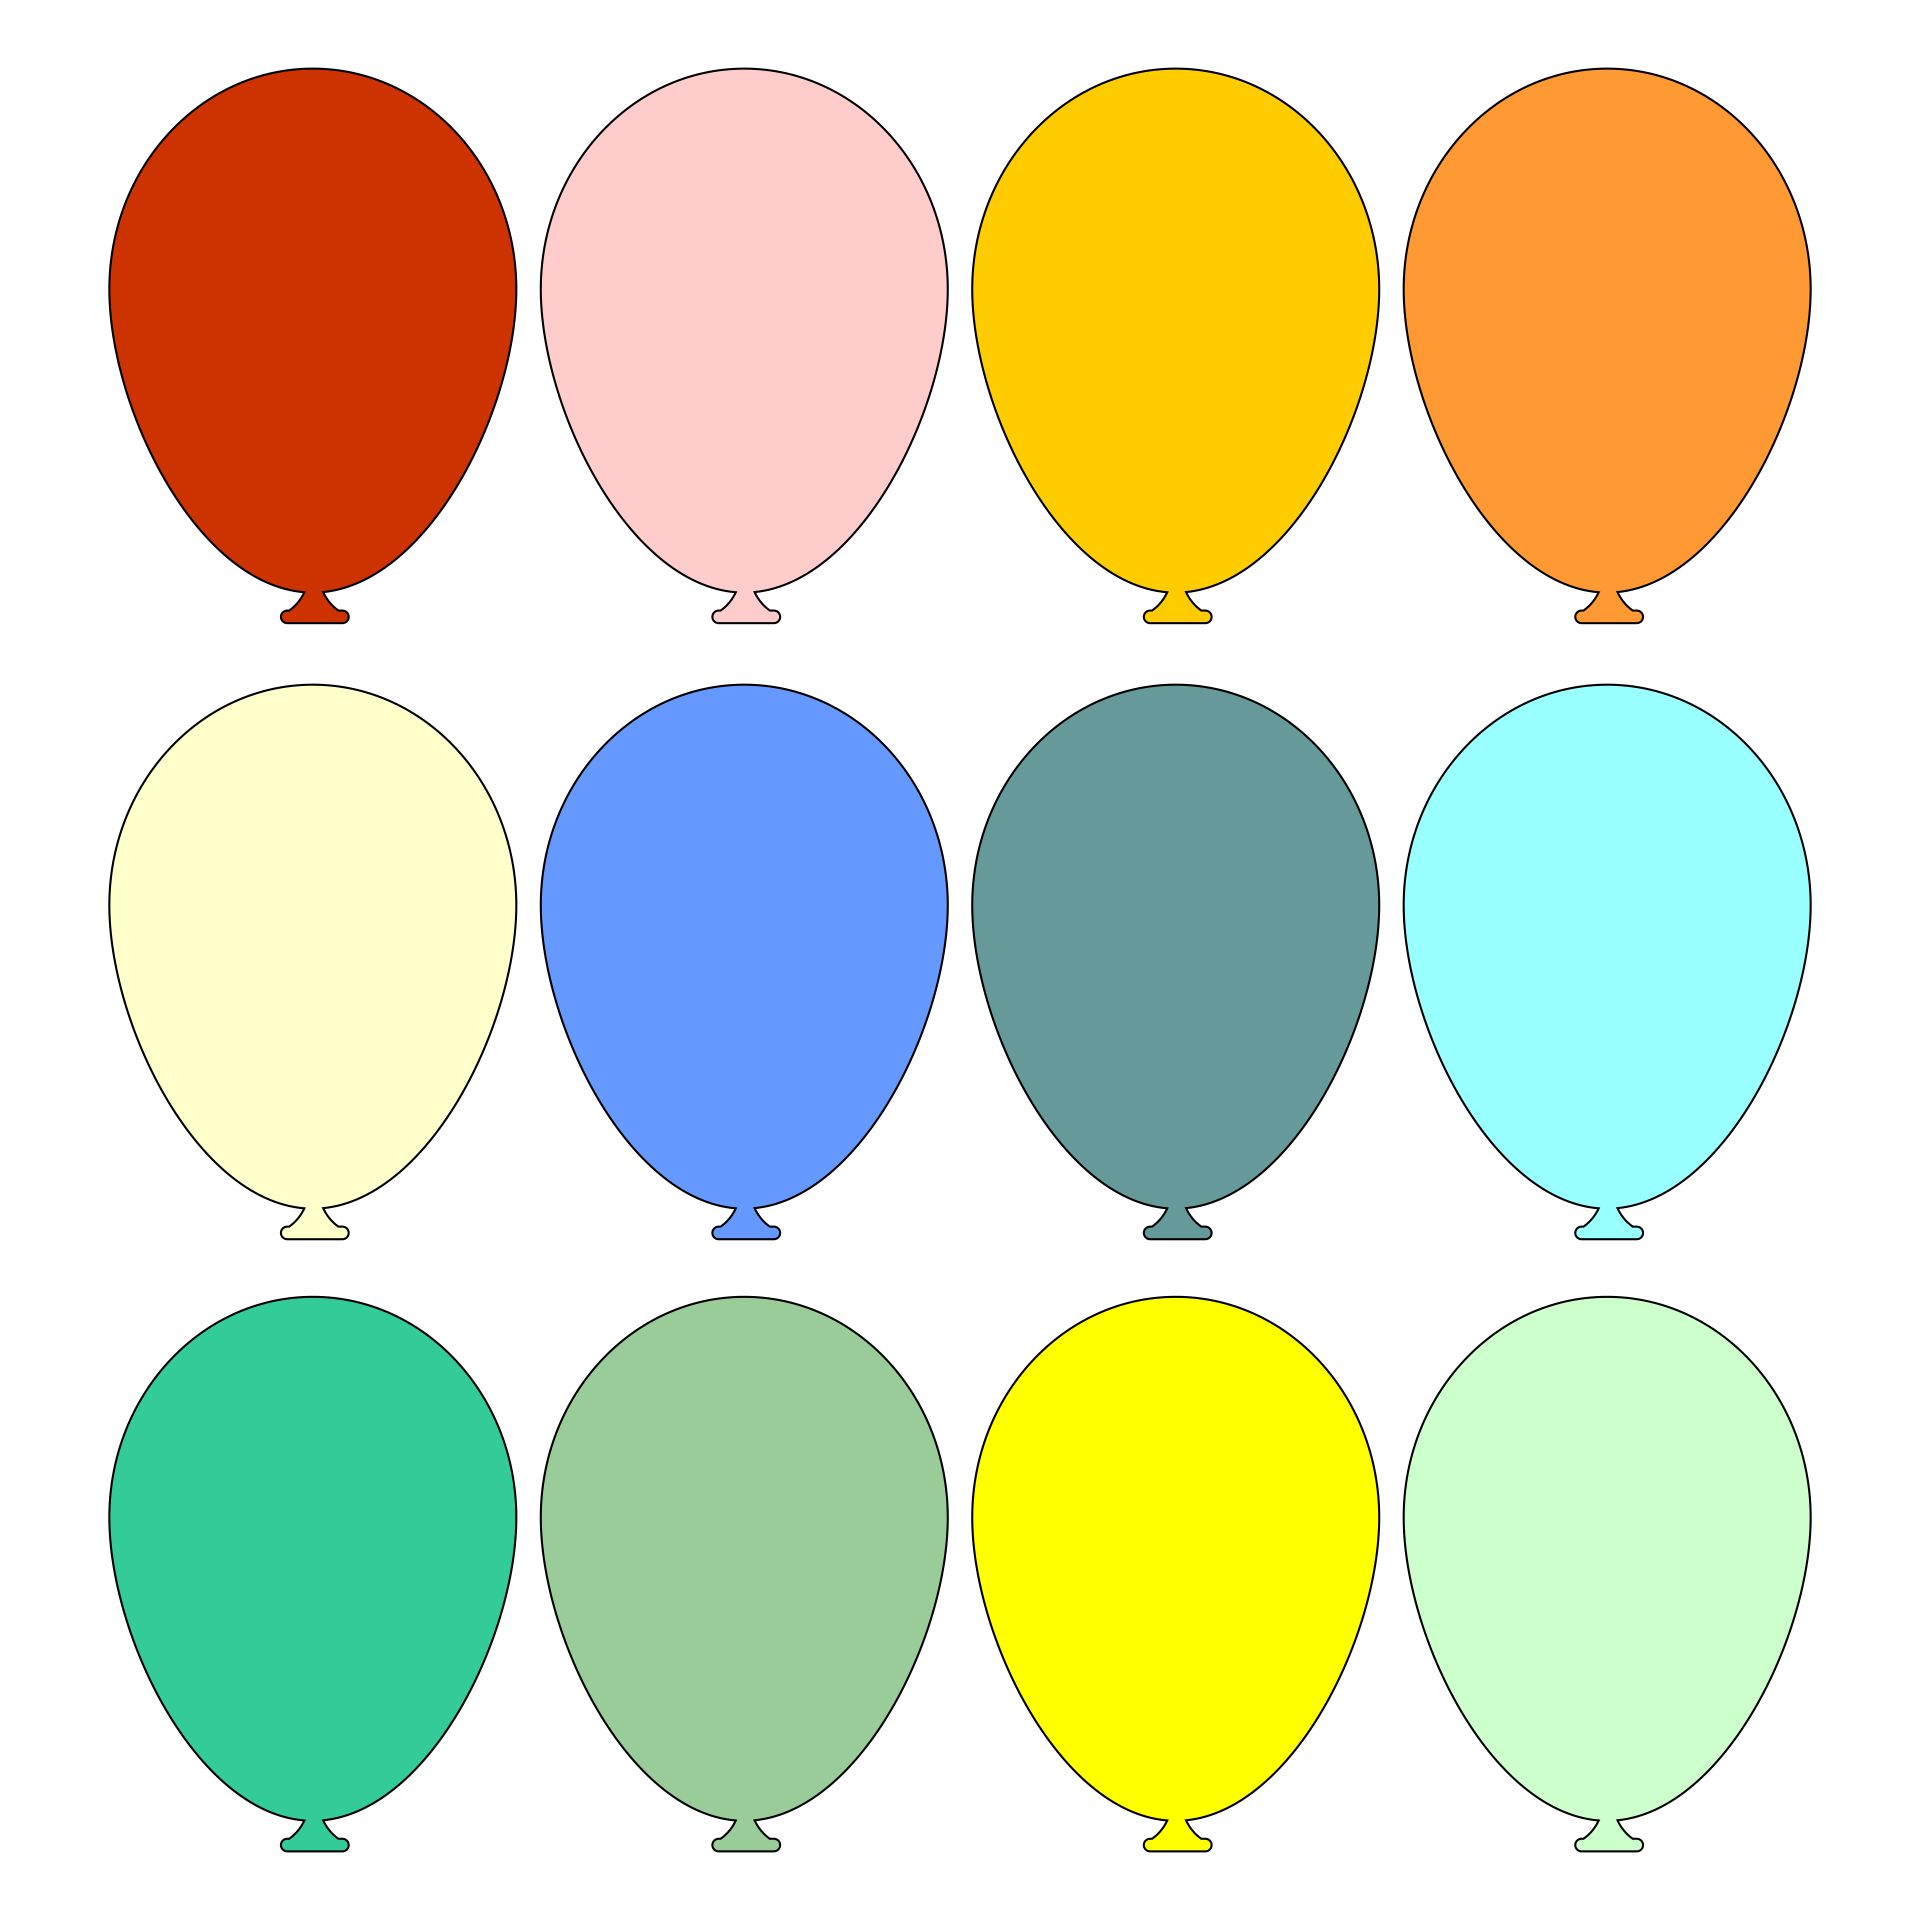 Balloon Template Free Printable Printable World Holiday